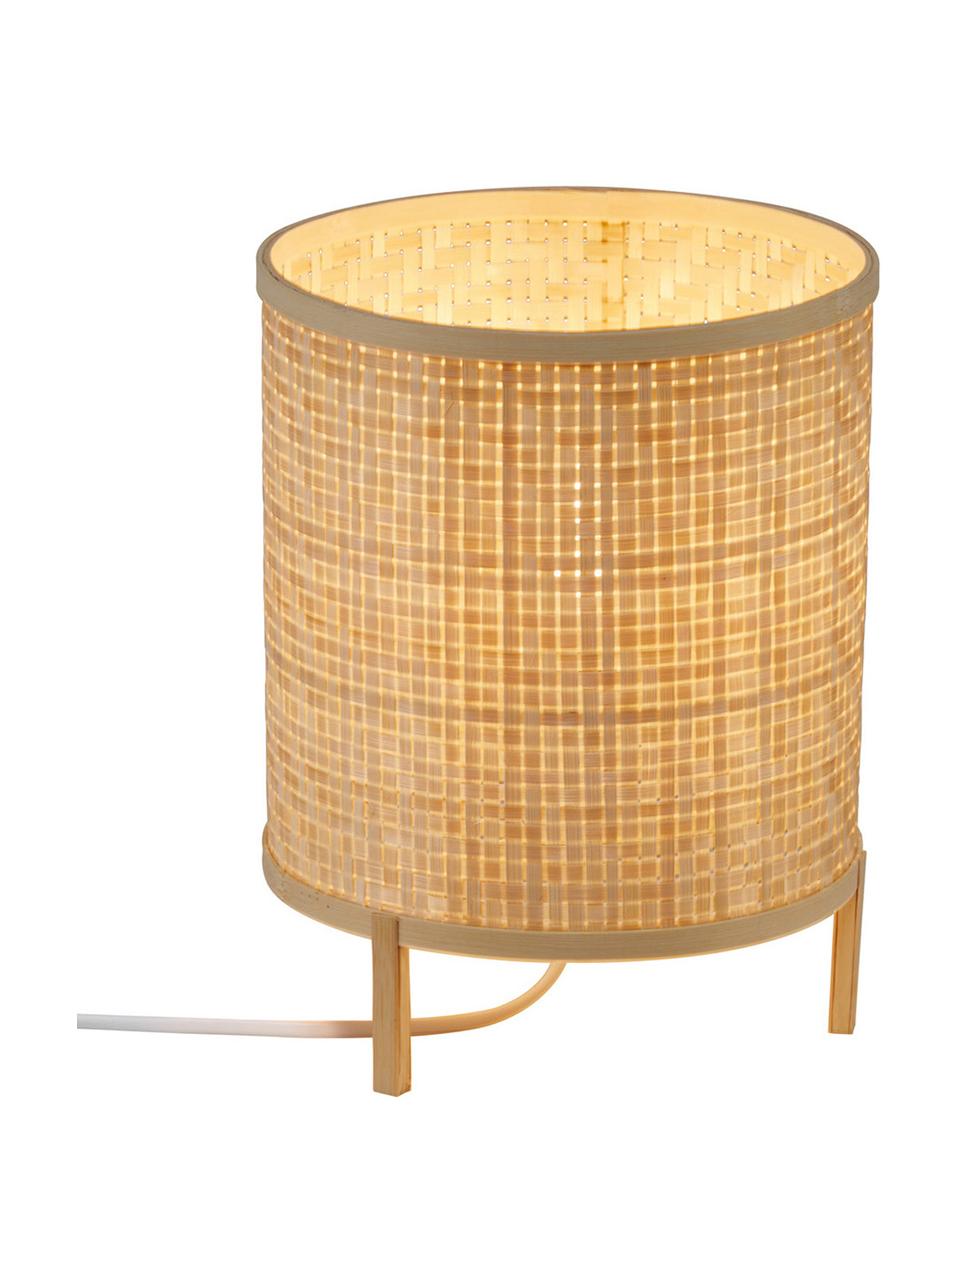 Kleine Tischlampe Trinidad aus Bambus, Lampenschirm: Bambusgeflecht, Lampenfuß: Bambus, Braun, Ø 19 x H 25 cm